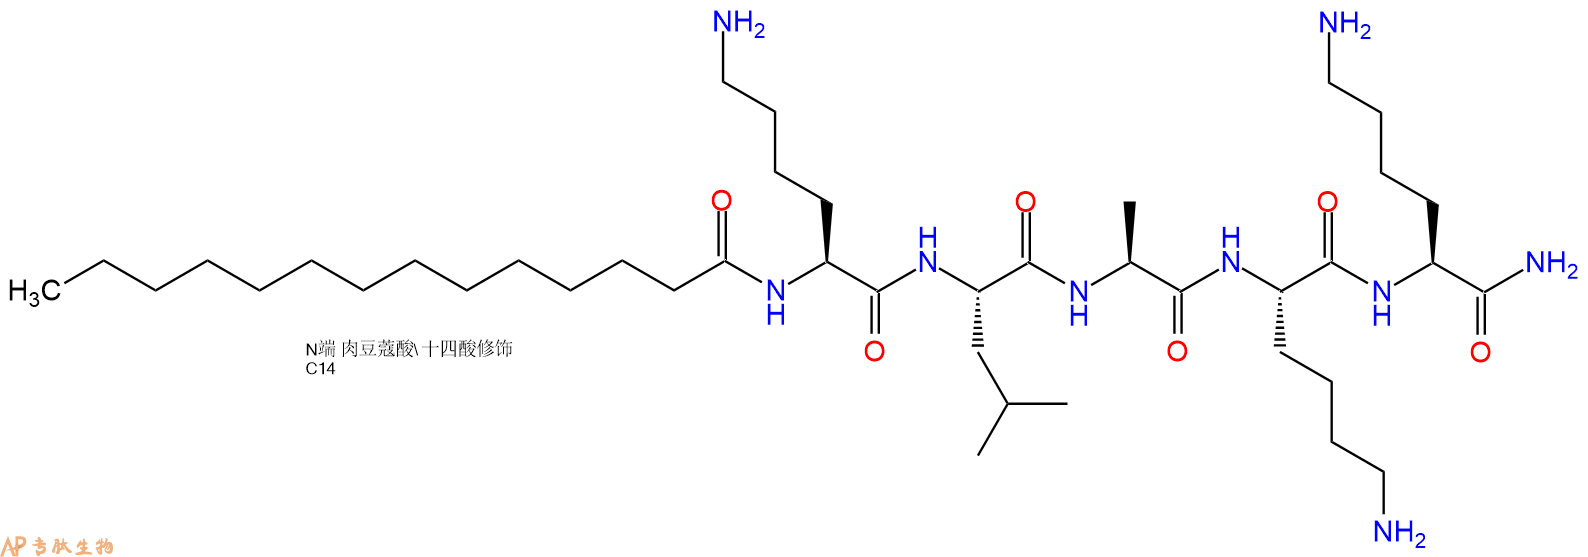 专肽生物产品肉豆蔻酰五肽-17/睫毛肽/促睫素、Myristoyl pentapeptide-17959610-30-1